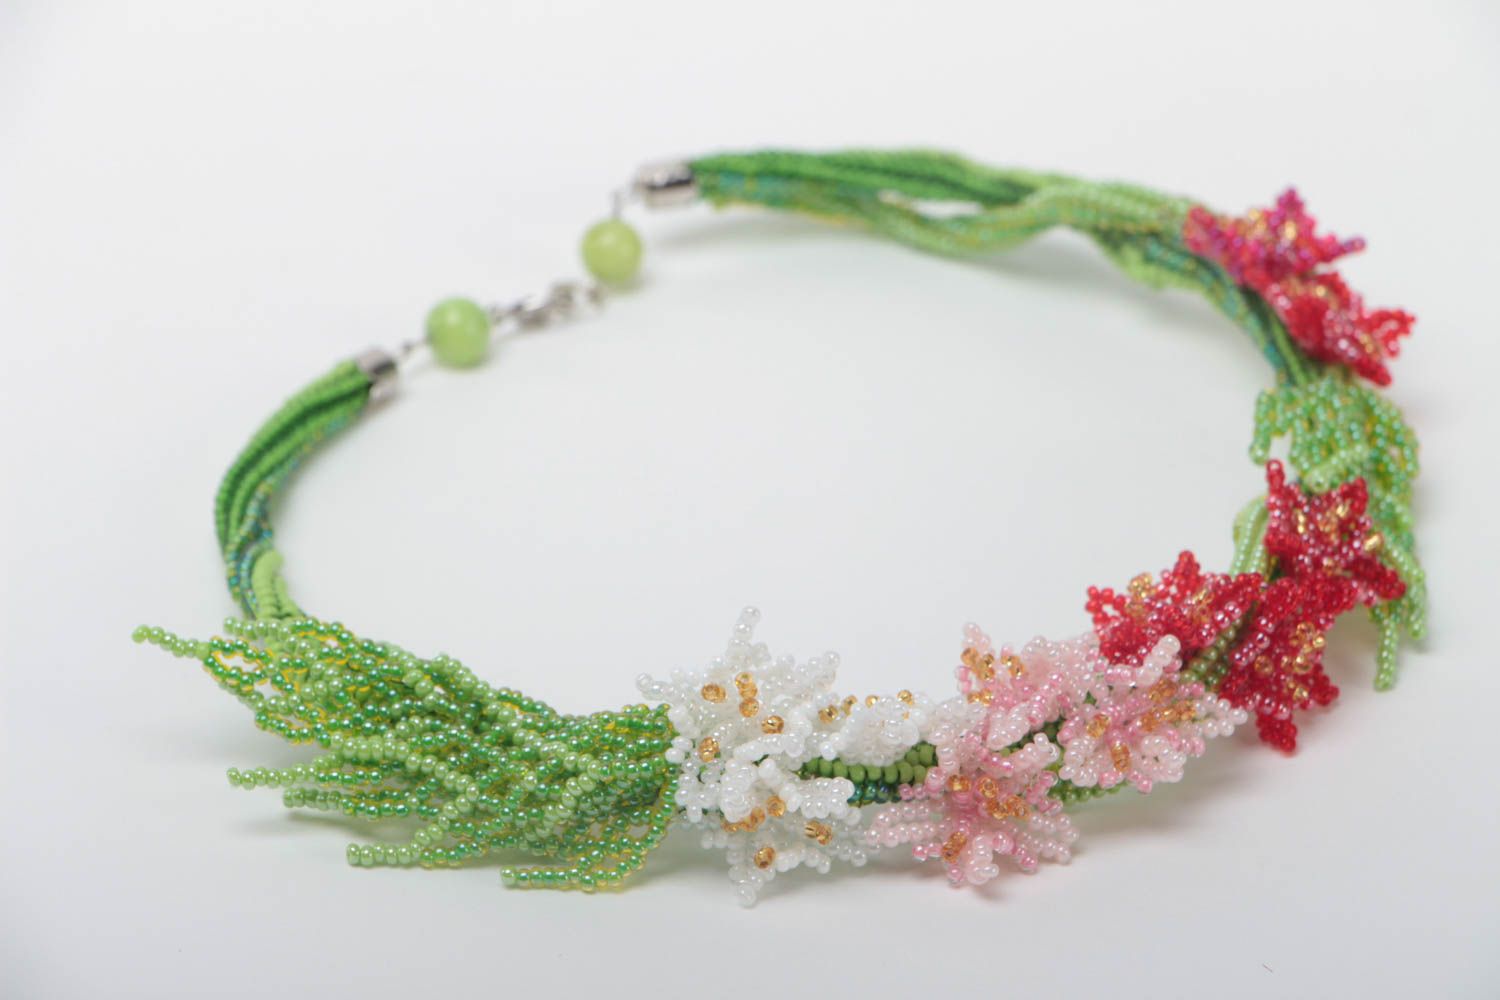 Ожерелье из бисера цветочное яркое летнее женственное красивое ручной работы фото 3